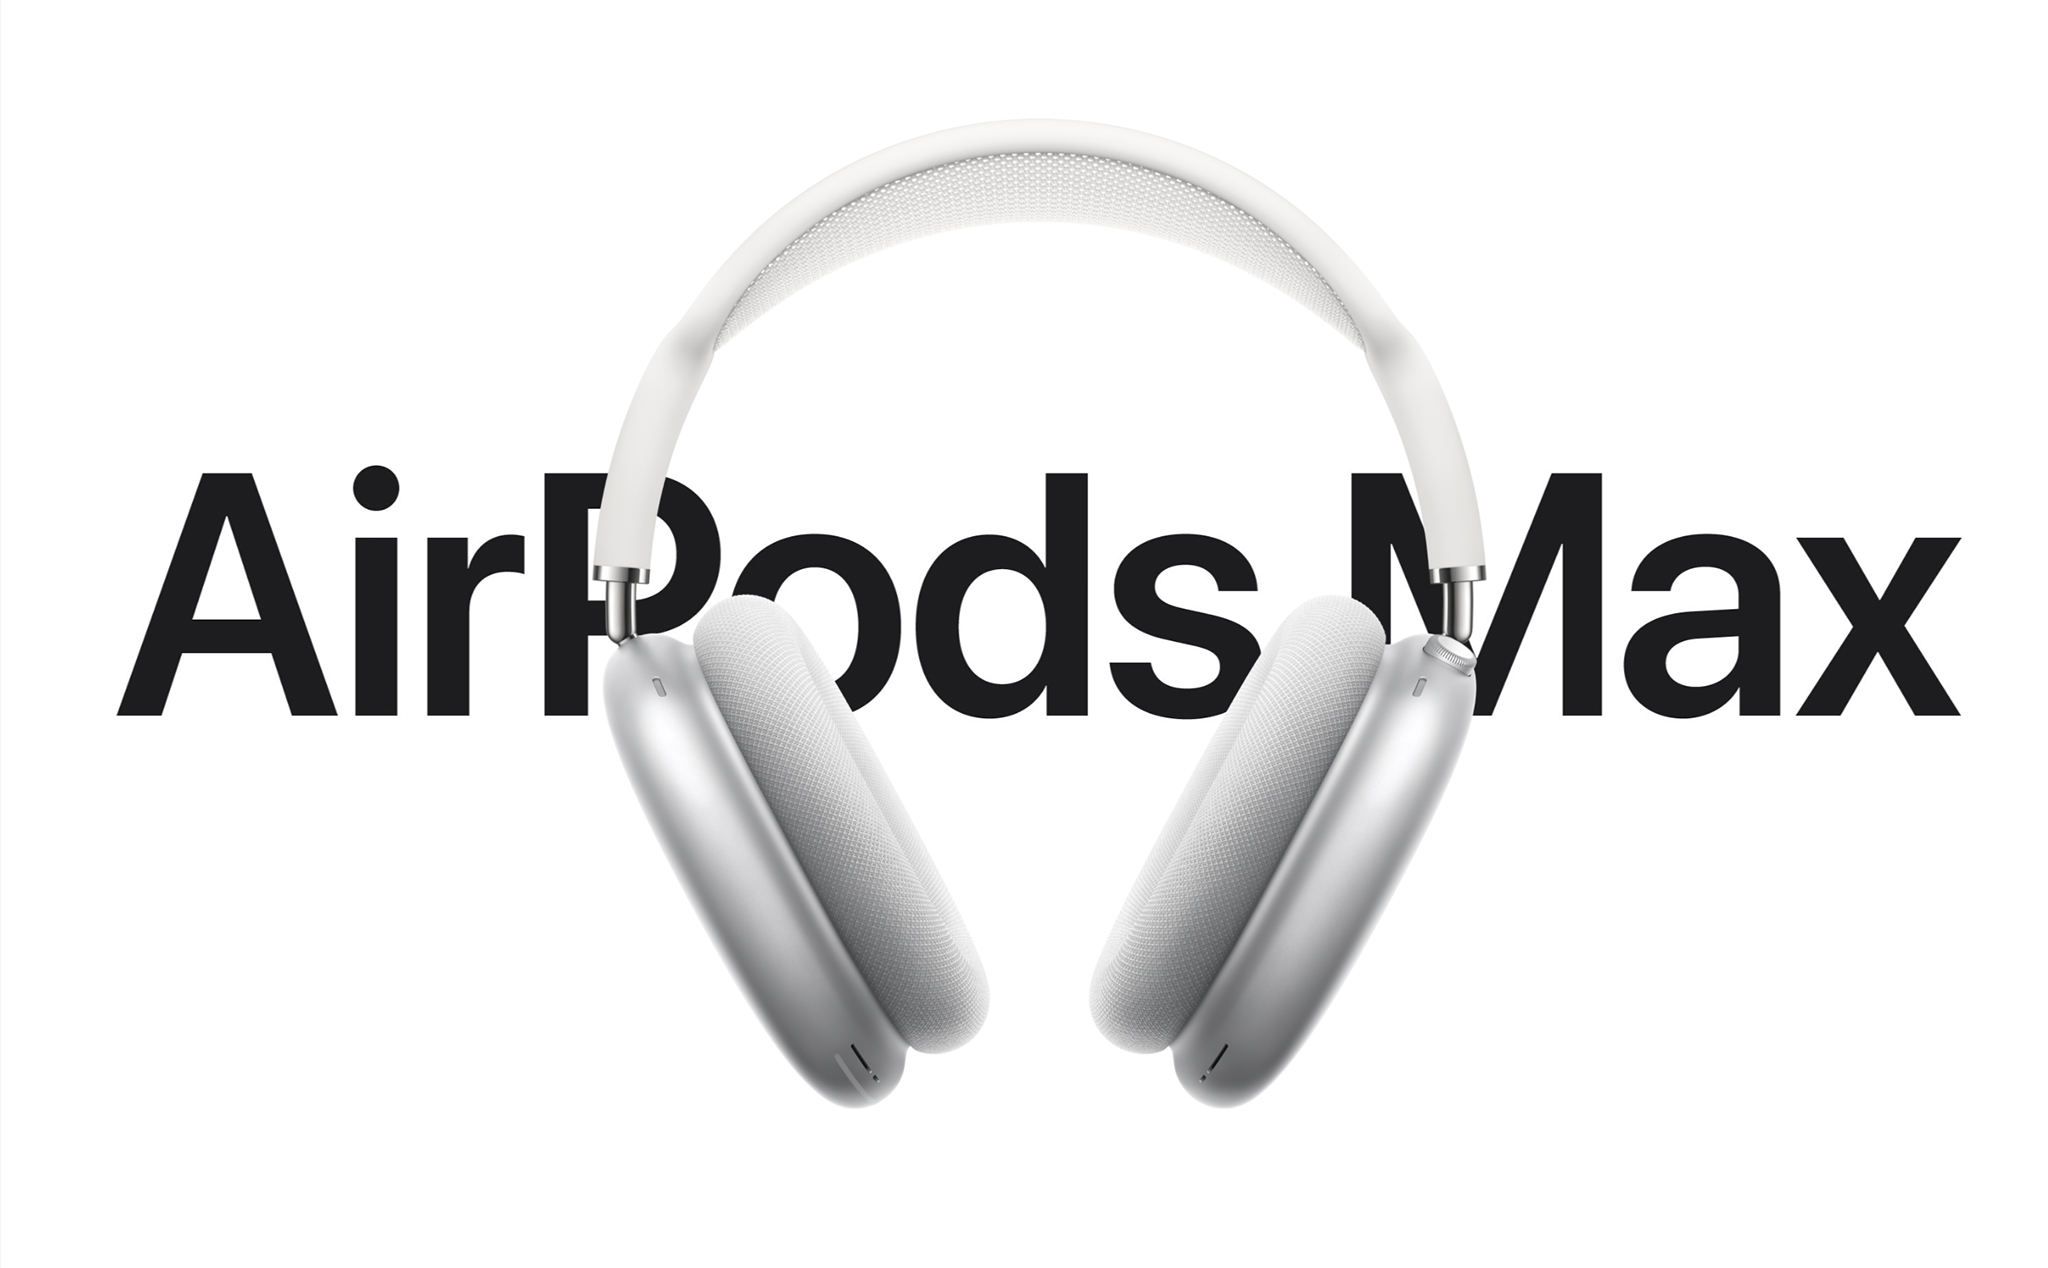 Apple ra mắt AirPods Max: tai nghe chống ồn mới, chip H1, nhiều tính năng thông minh, giá 549 USD